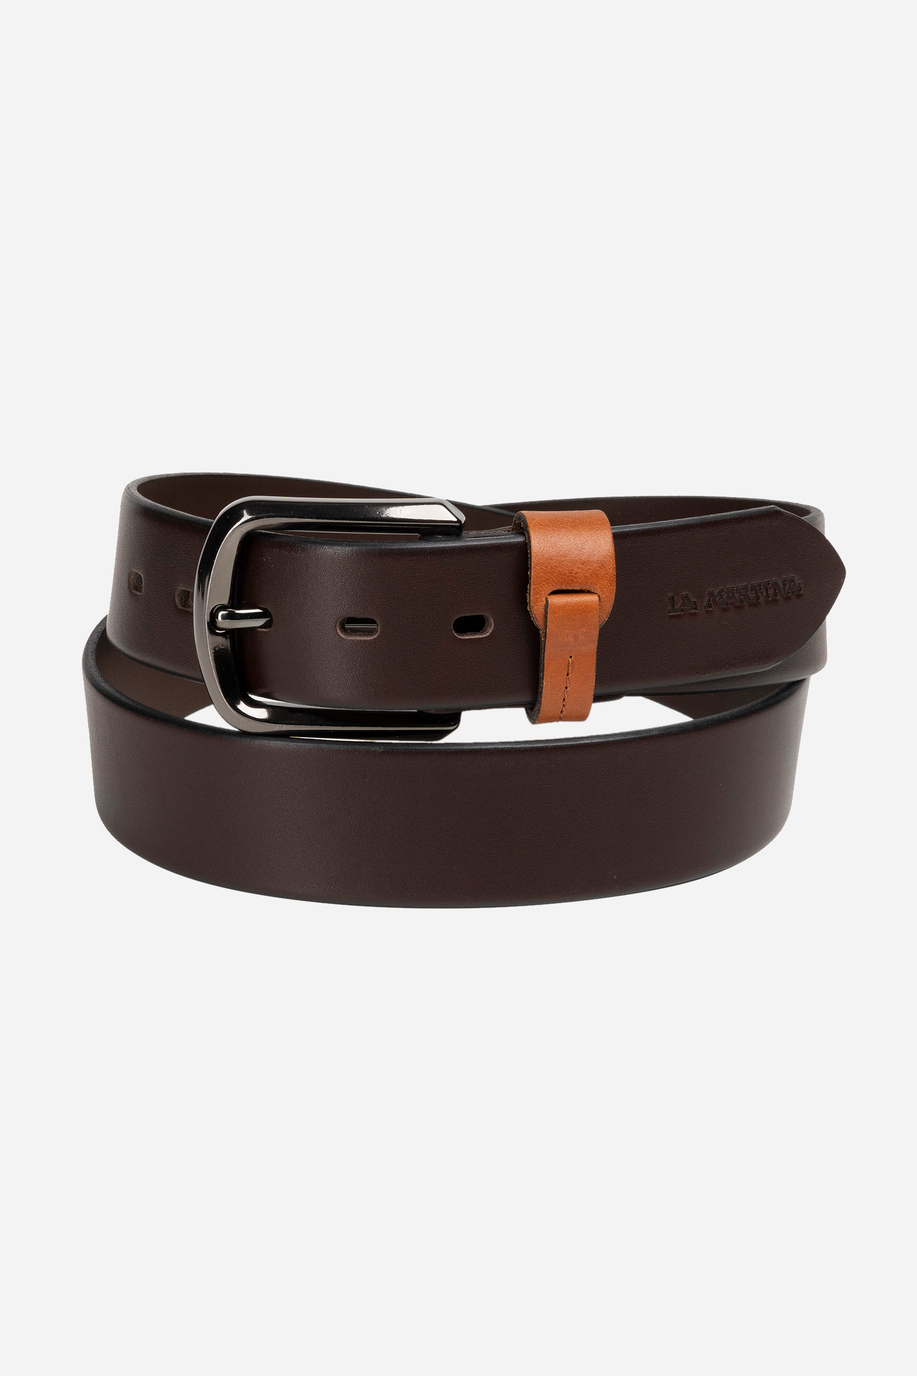 Men's belt in shiny leather - Belts | La Martina - Official Online Shop